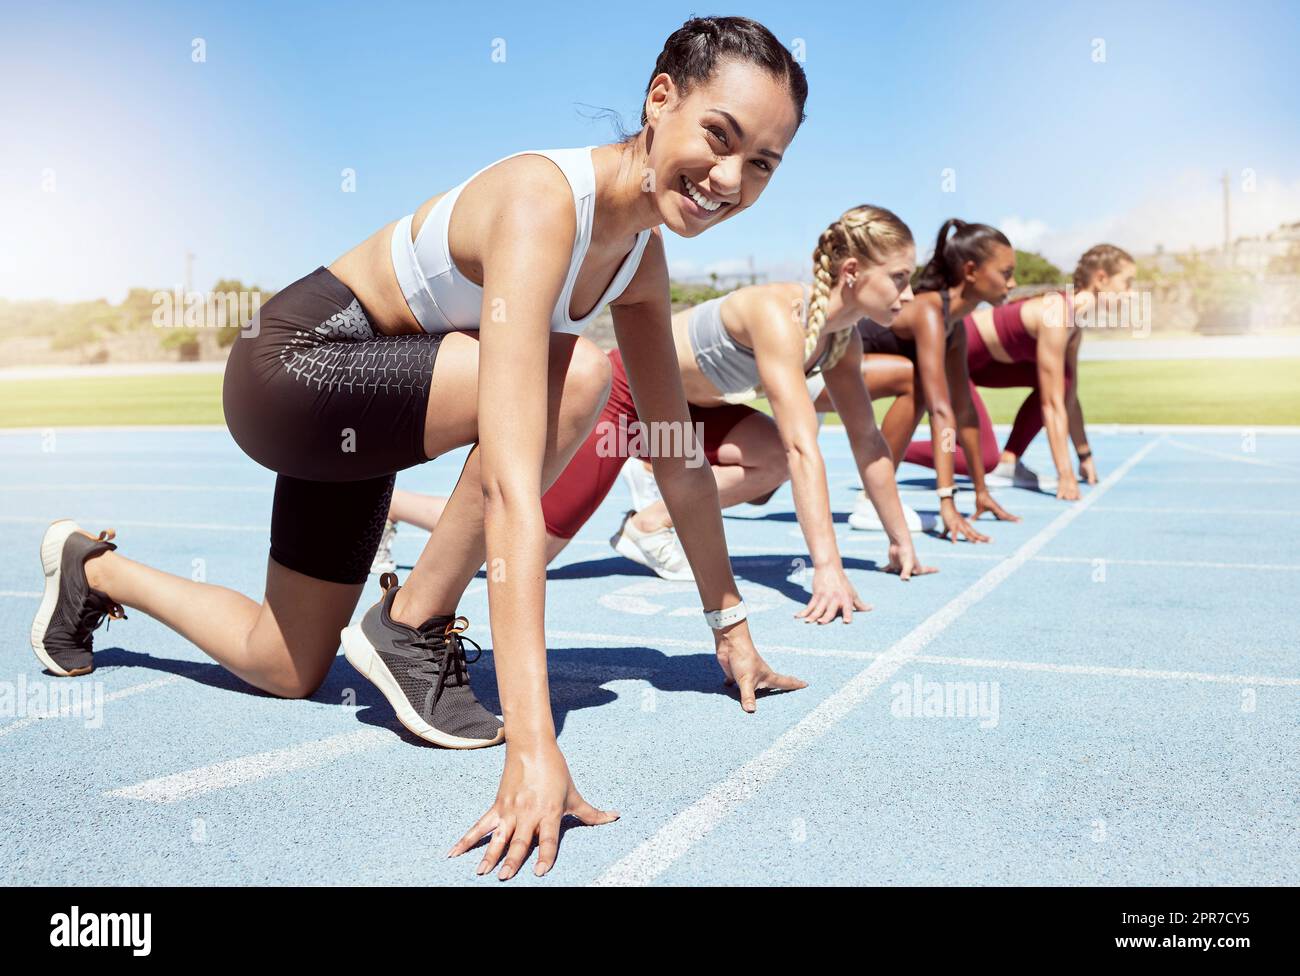 Ritratto di atleta motivata e pronta a gareggiare in atletica leggera. Gruppo diversificato di donne competitive con le mani sulla linea di partenza pronte a correre e determinate a vincere Foto Stock